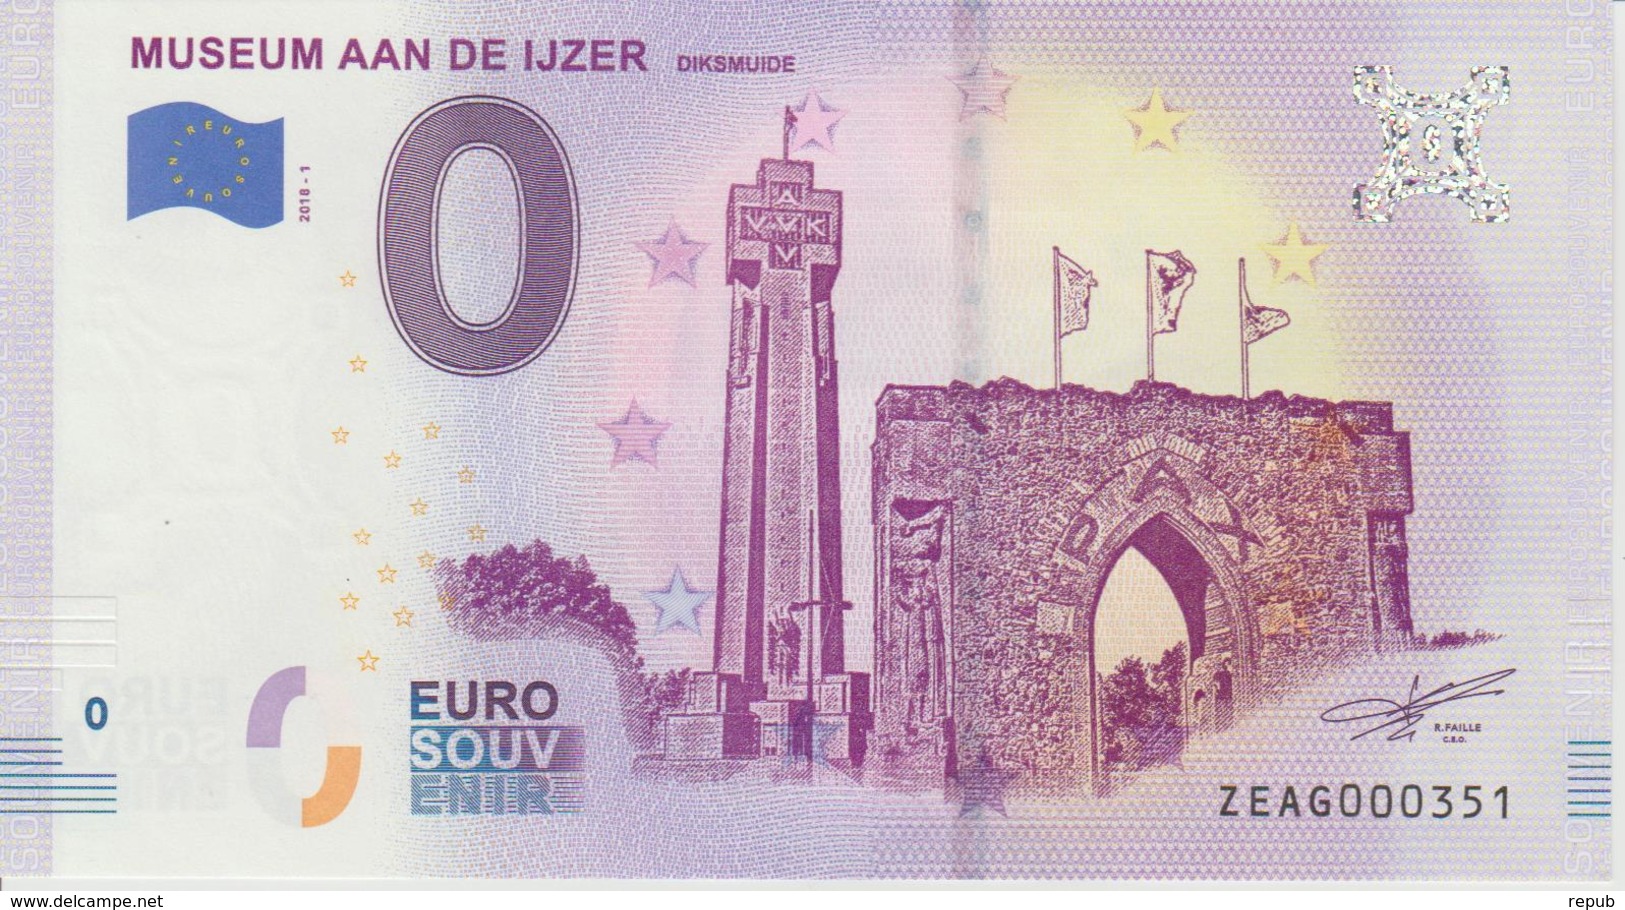 Billet Touristique 0 Euro Souvenir Belgique Museum Aan De Ijzer 2018-1 N°ZEAG000351 - Private Proofs / Unofficial